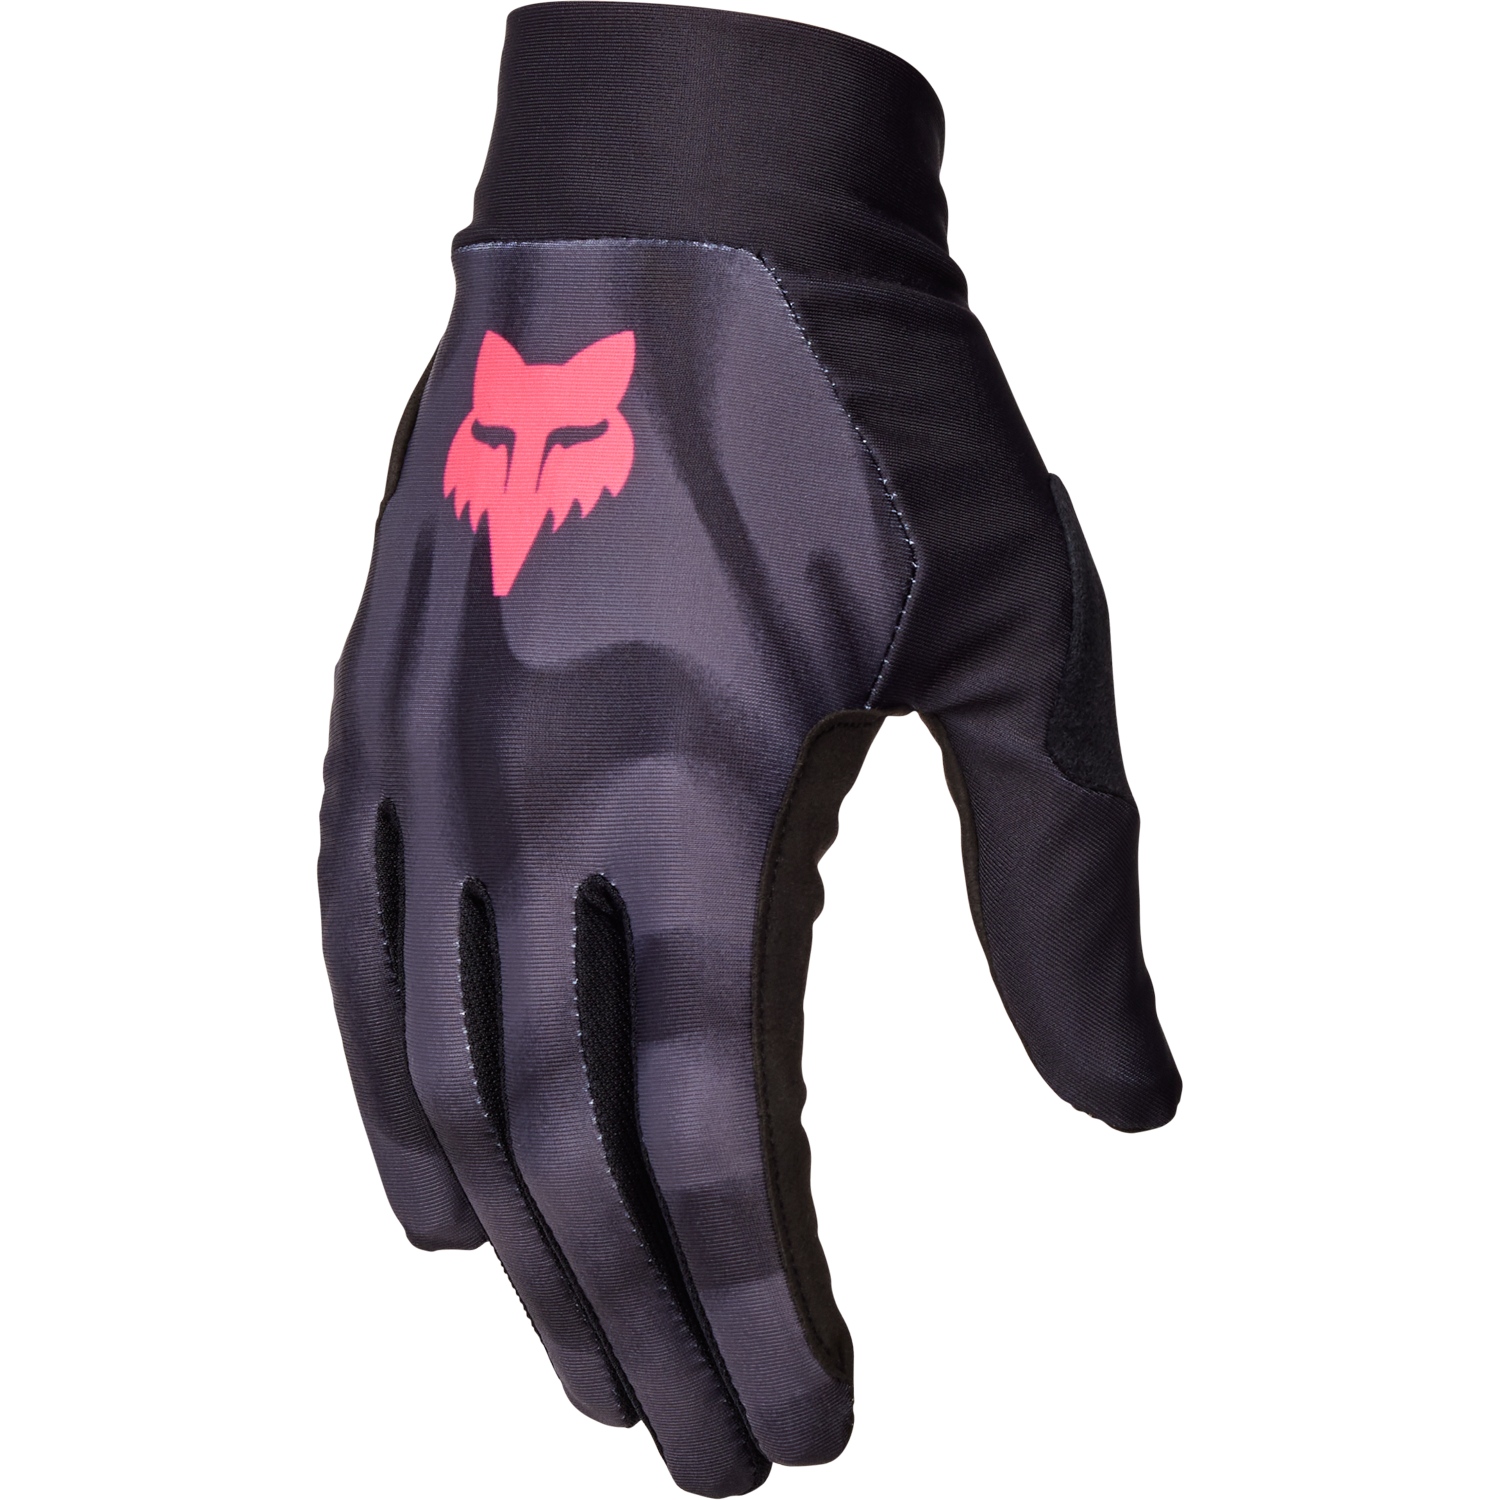 Produktbild von FOX Flexair MTB Handschuhe Herren - Taunt - dark shadow